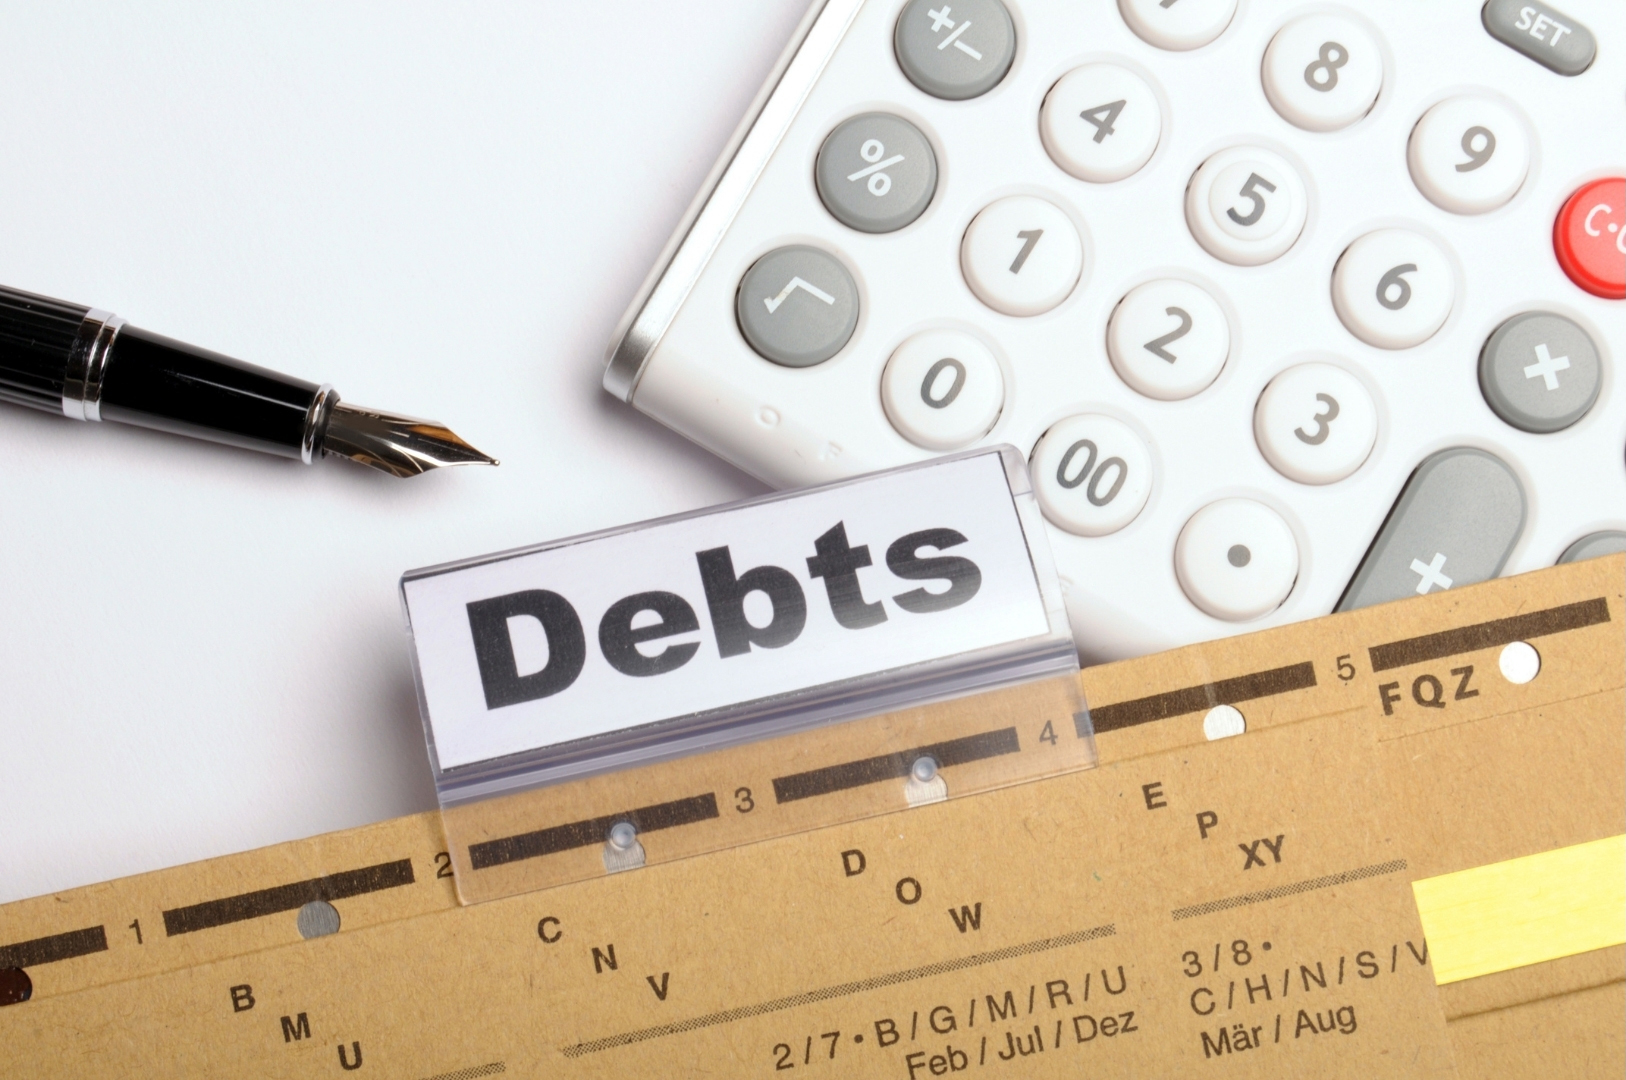 Một số điểm mới về cơ cấu lại thời hạn trả nợ, miễn, giảm lãi, phí, giữ nguyên nhóm nợ nhằm hỗ trợ khách hàng chịu ảnh hưởng bởi dịch Covid-19